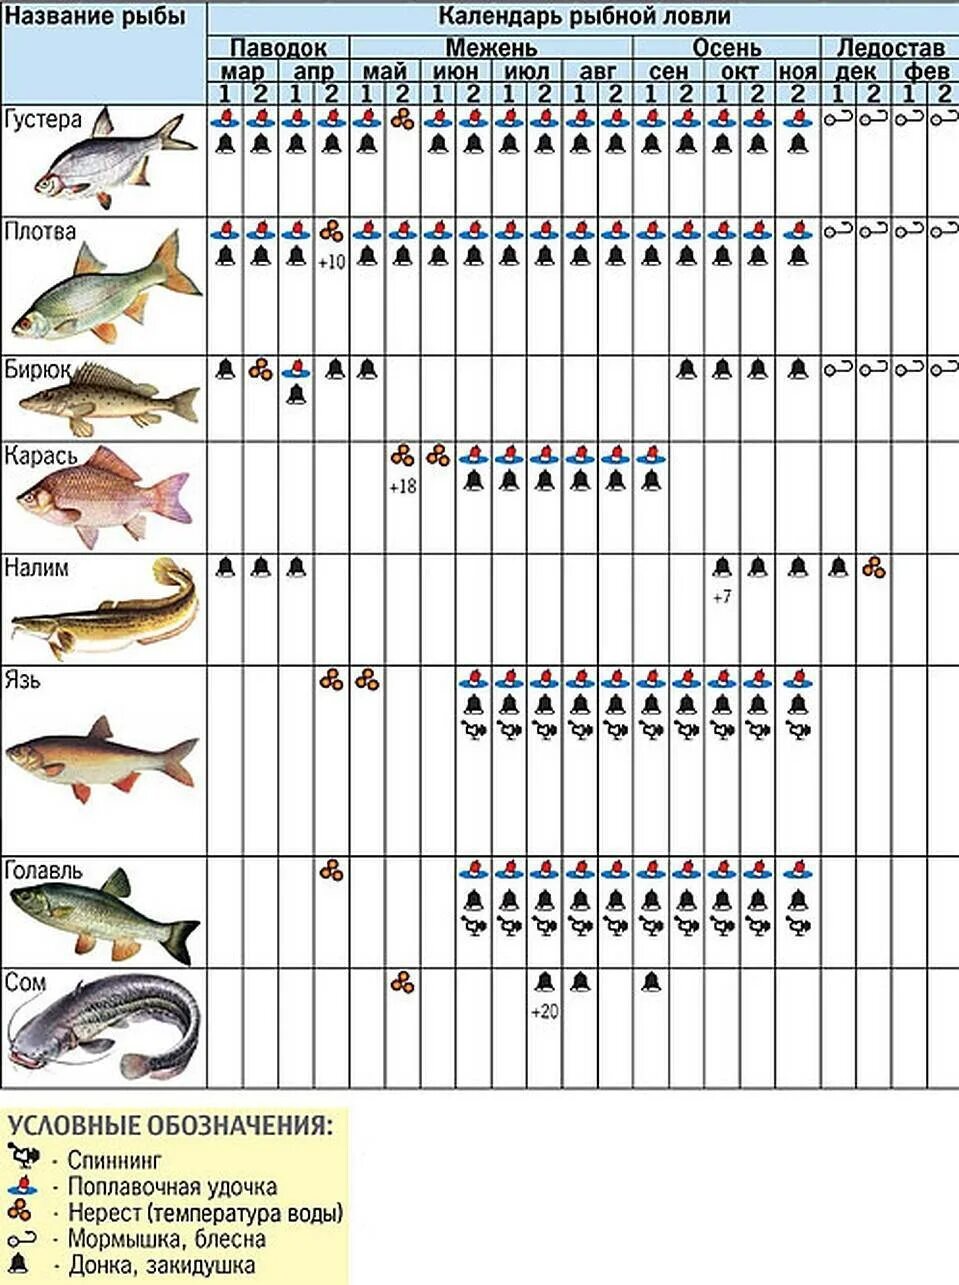 Календарь рыбалки. На что можно лов ть рыбу. Календарь рыболова. Календарь ловли рыбы. Когда можно начинать рыбачить